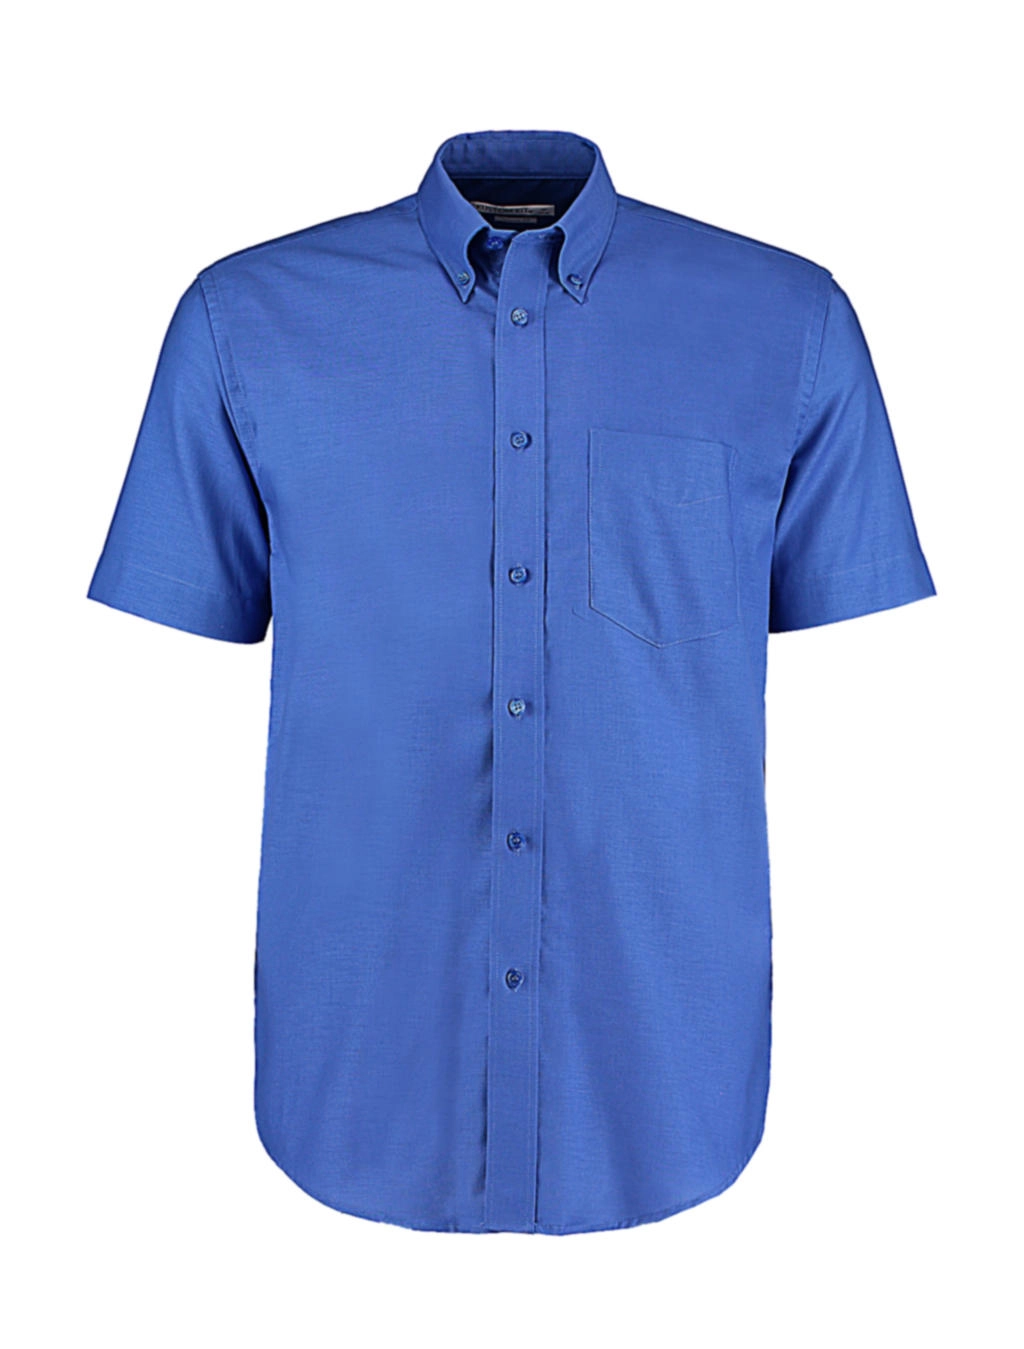 Classic Fit Workwear Oxford Shirt SSL zum Besticken und Bedrucken in der Farbe Italian Blue mit Ihren Logo, Schriftzug oder Motiv.